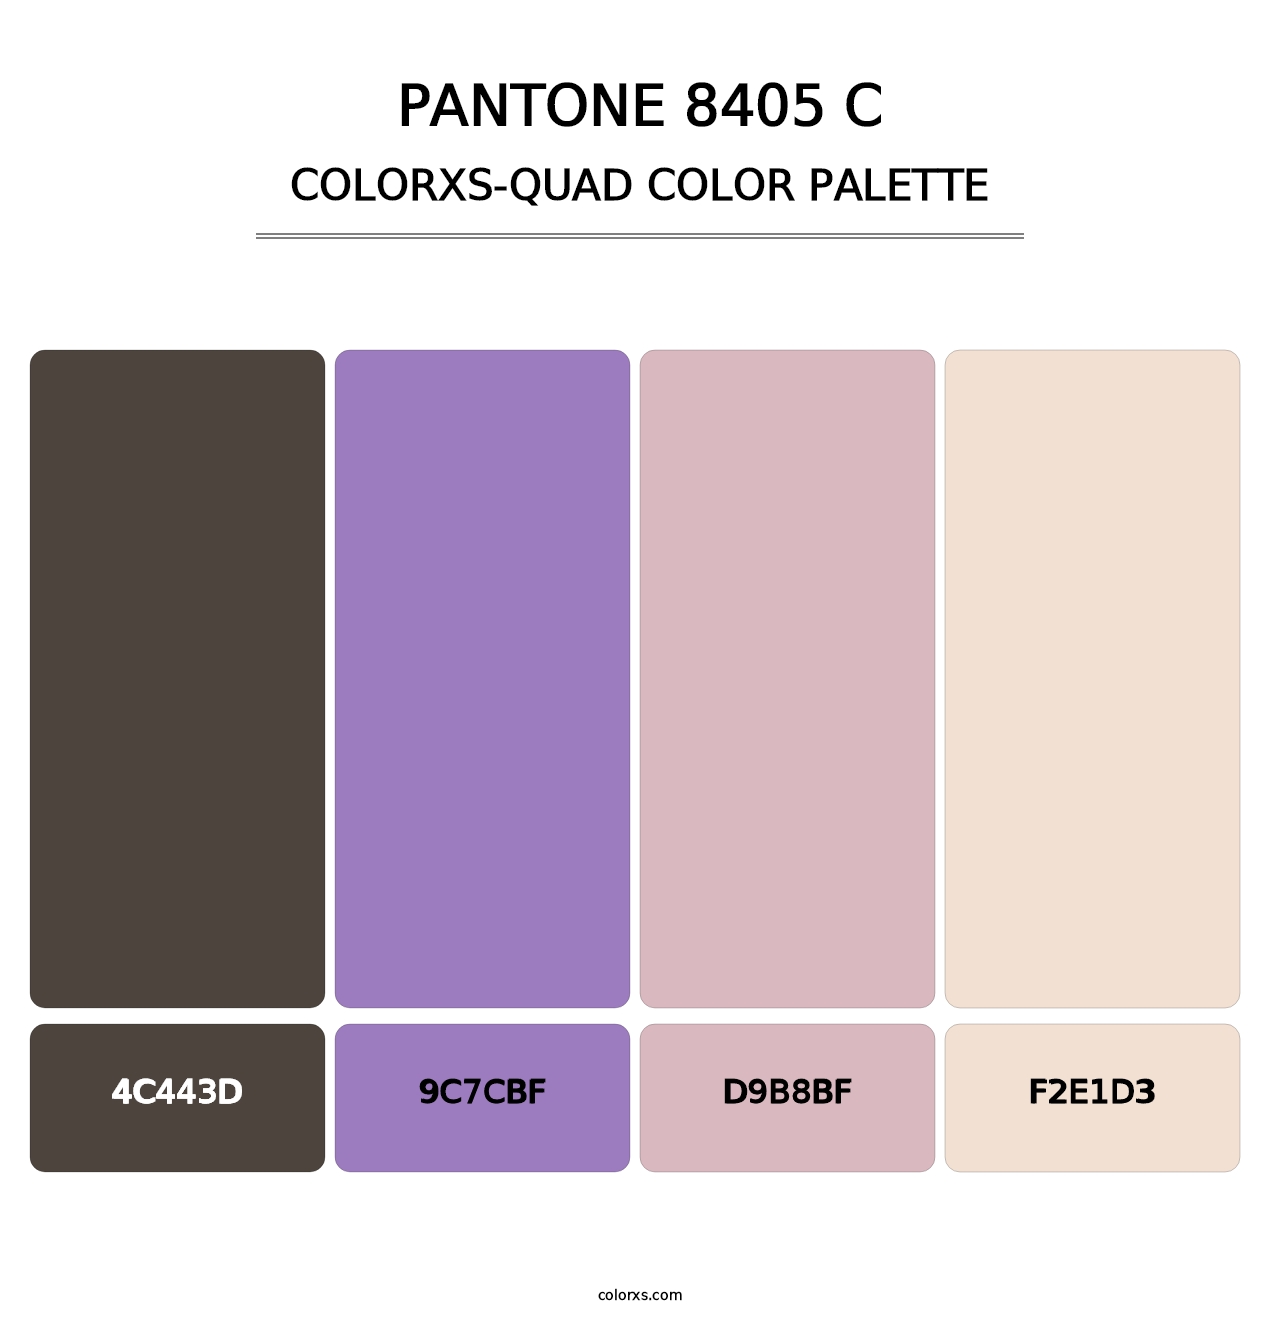 PANTONE 8405 C - Colorxs Quad Palette